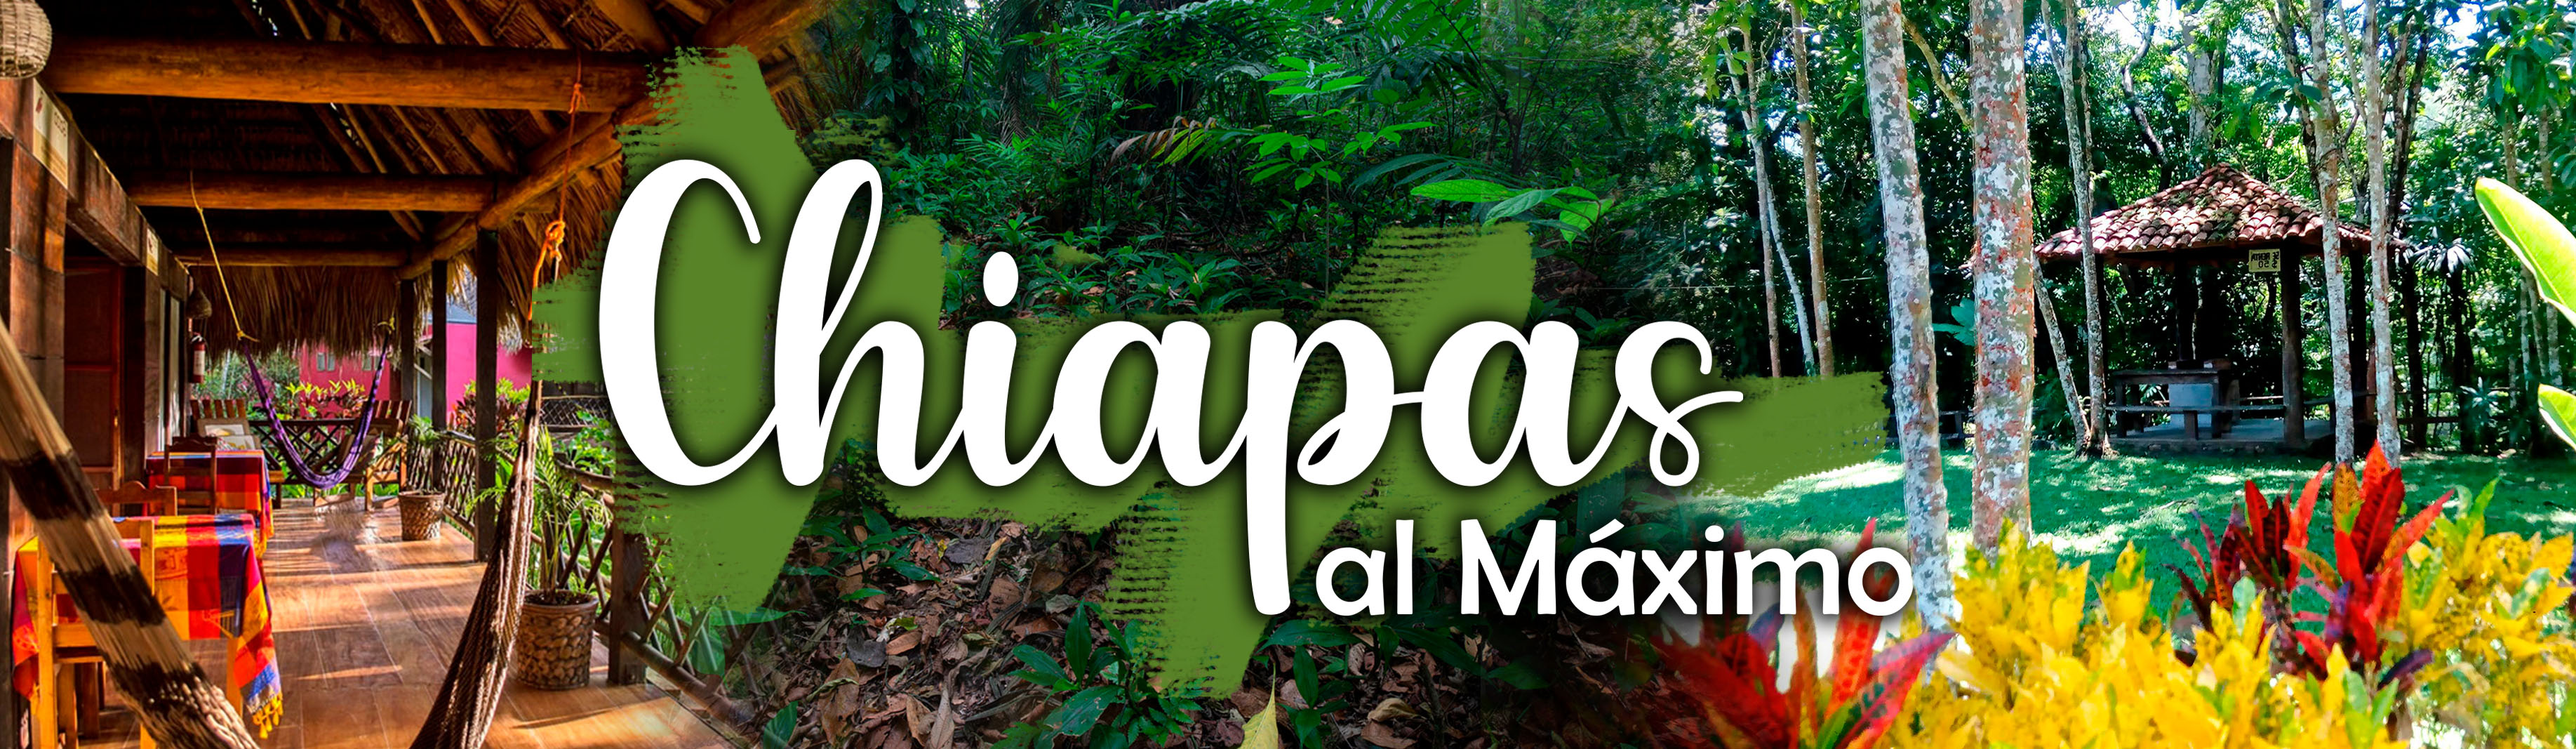 Chiapas Al Máximo